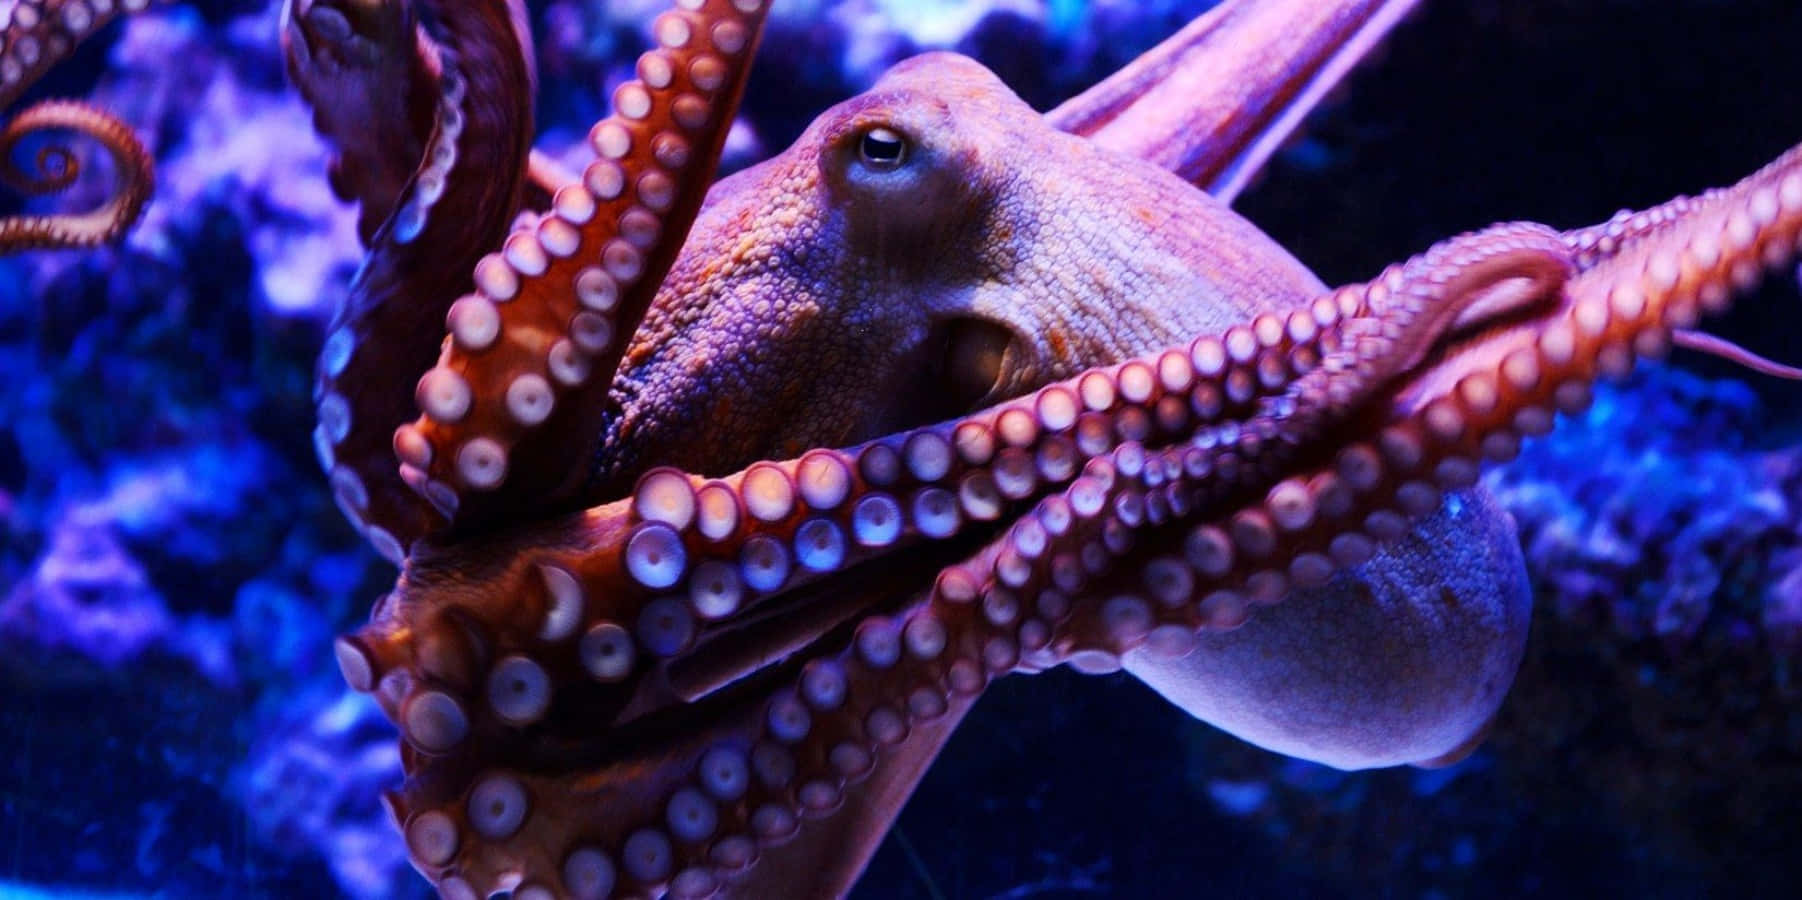 Giant Pacific Octopus Underwater Display Wallpaper